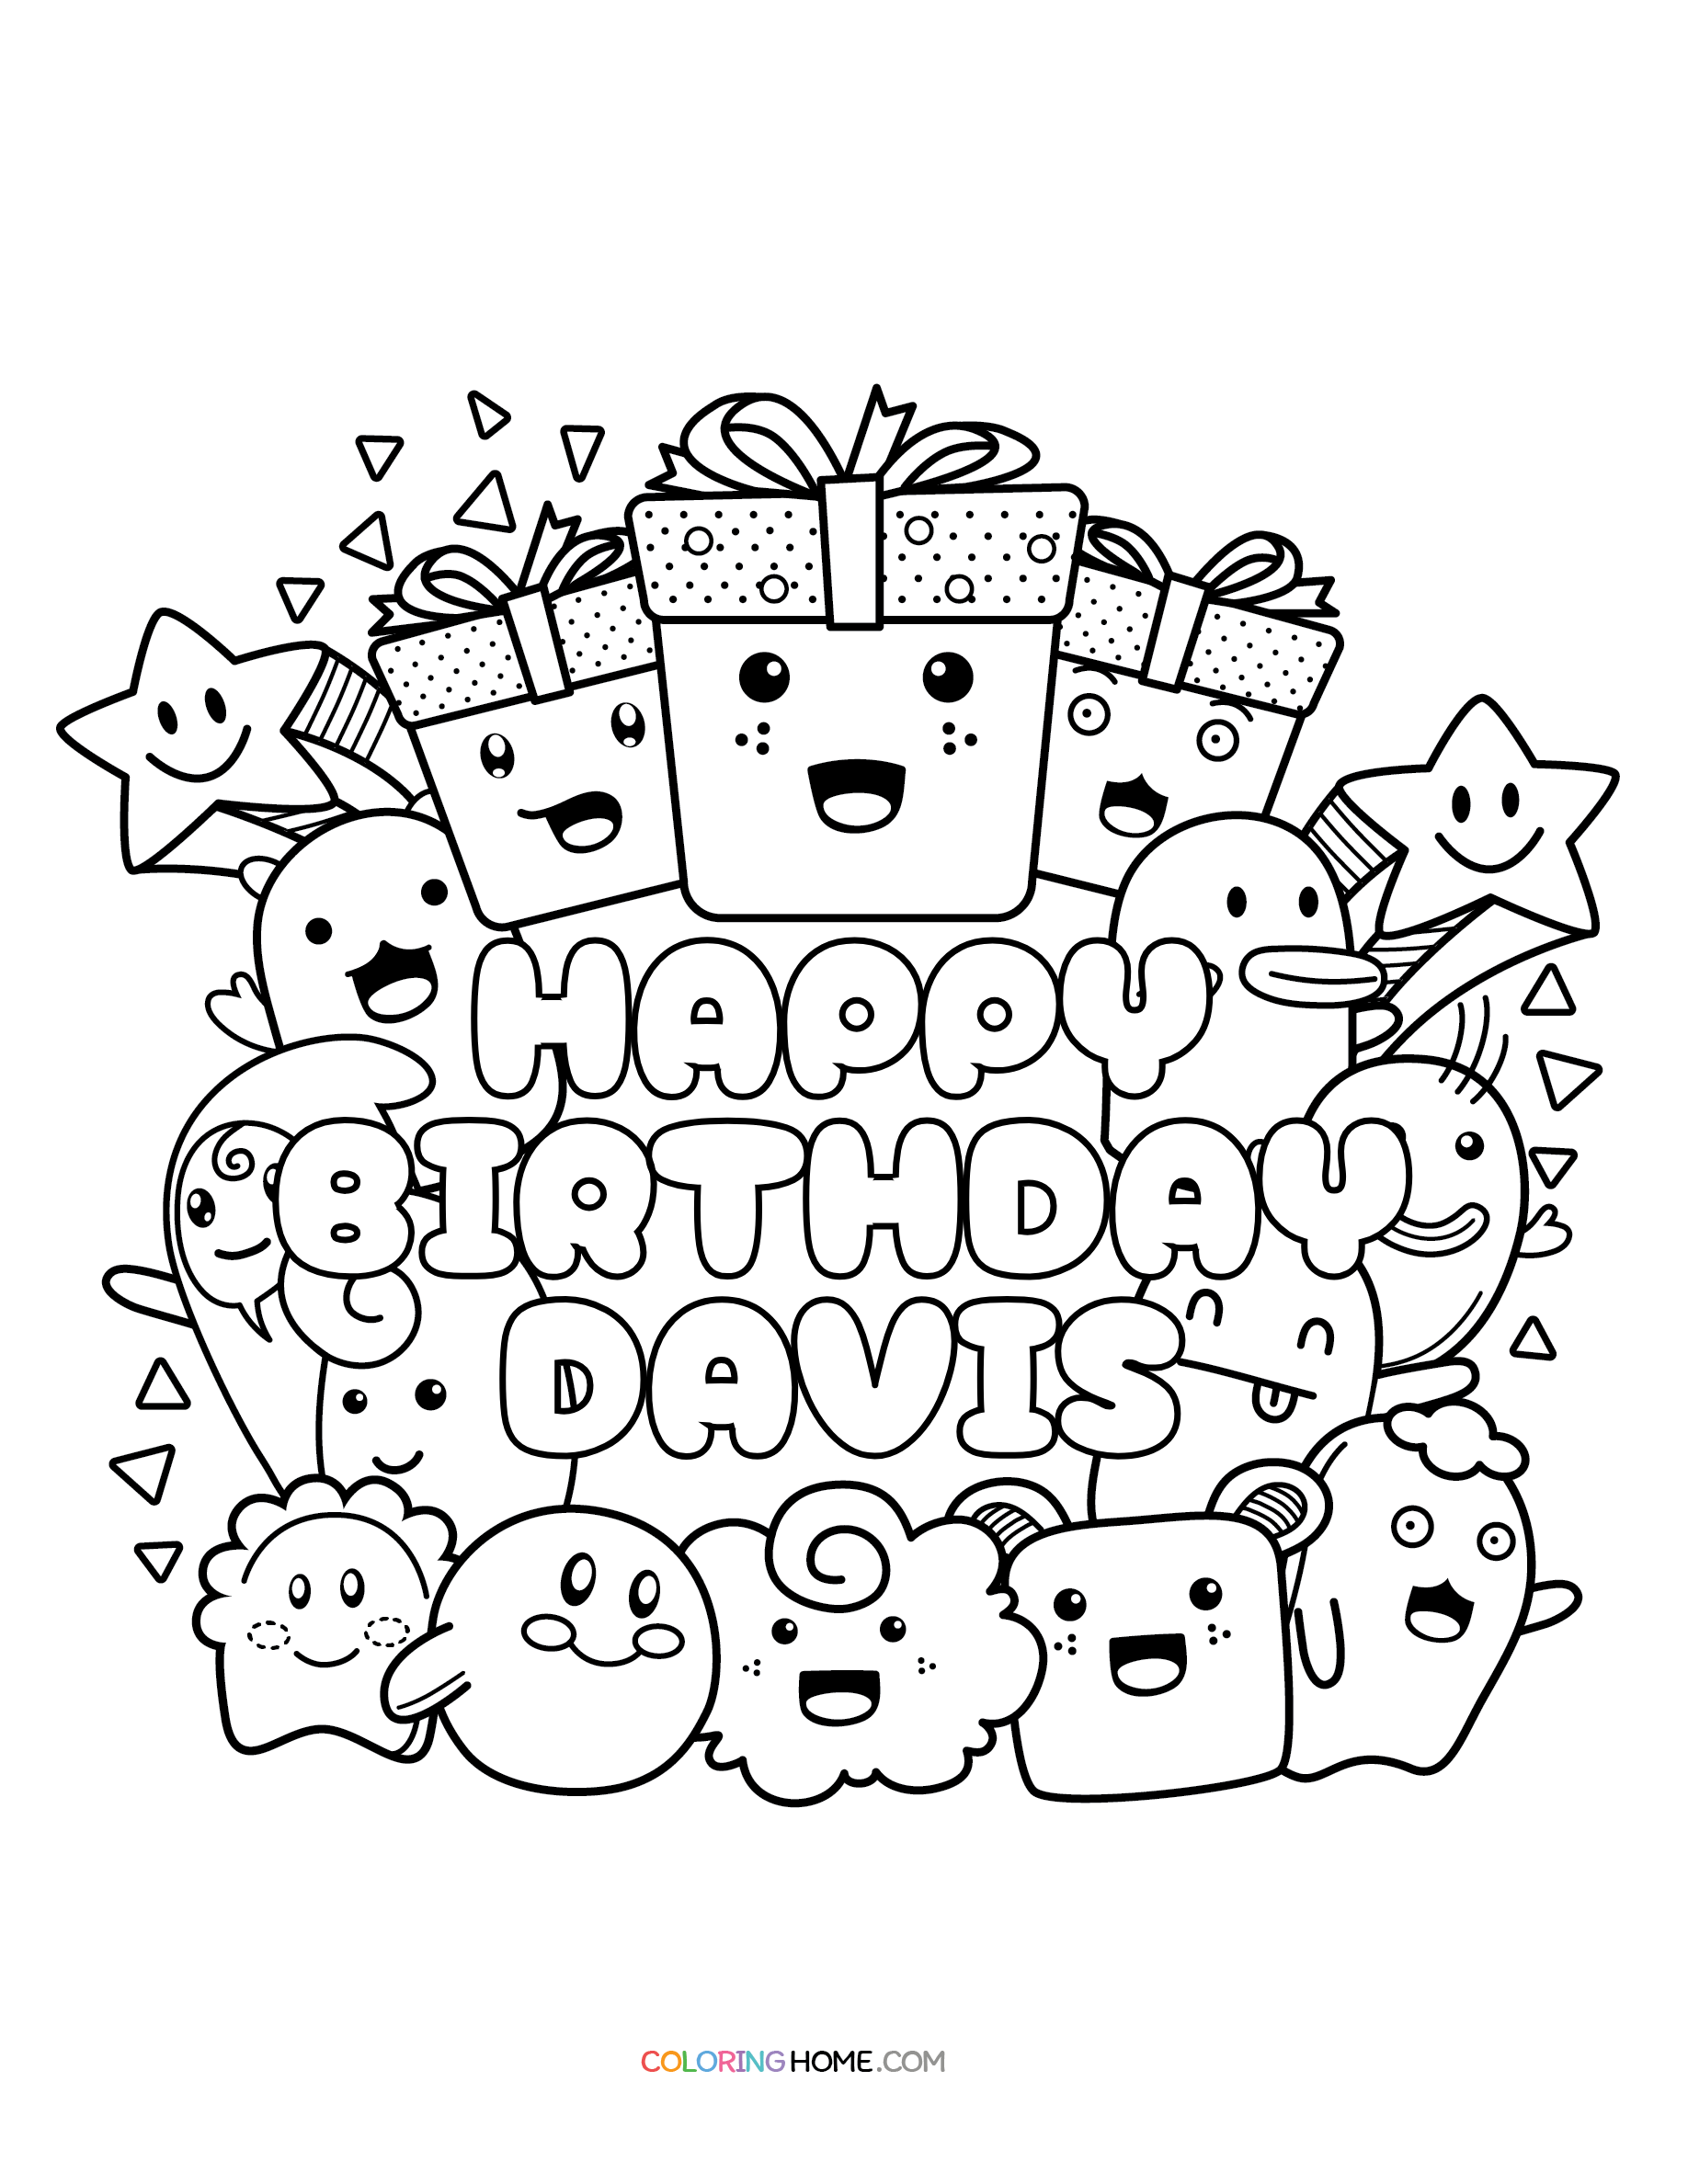 Happy Birthday Davis coloring page